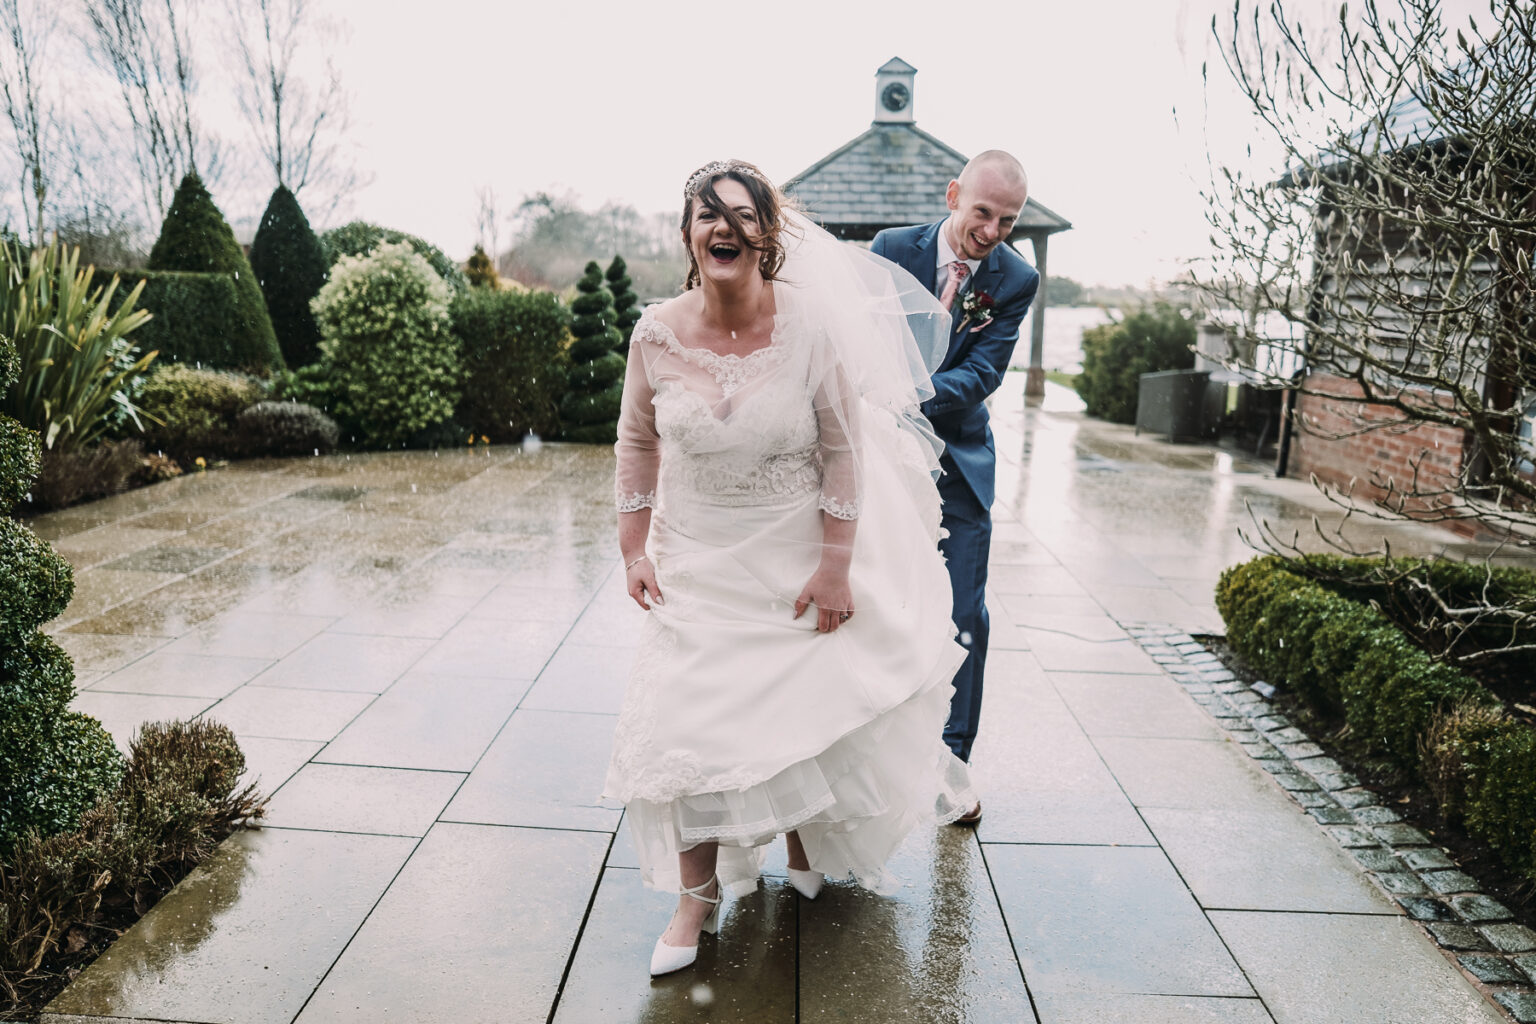 rain at winter wedding in Cheshire